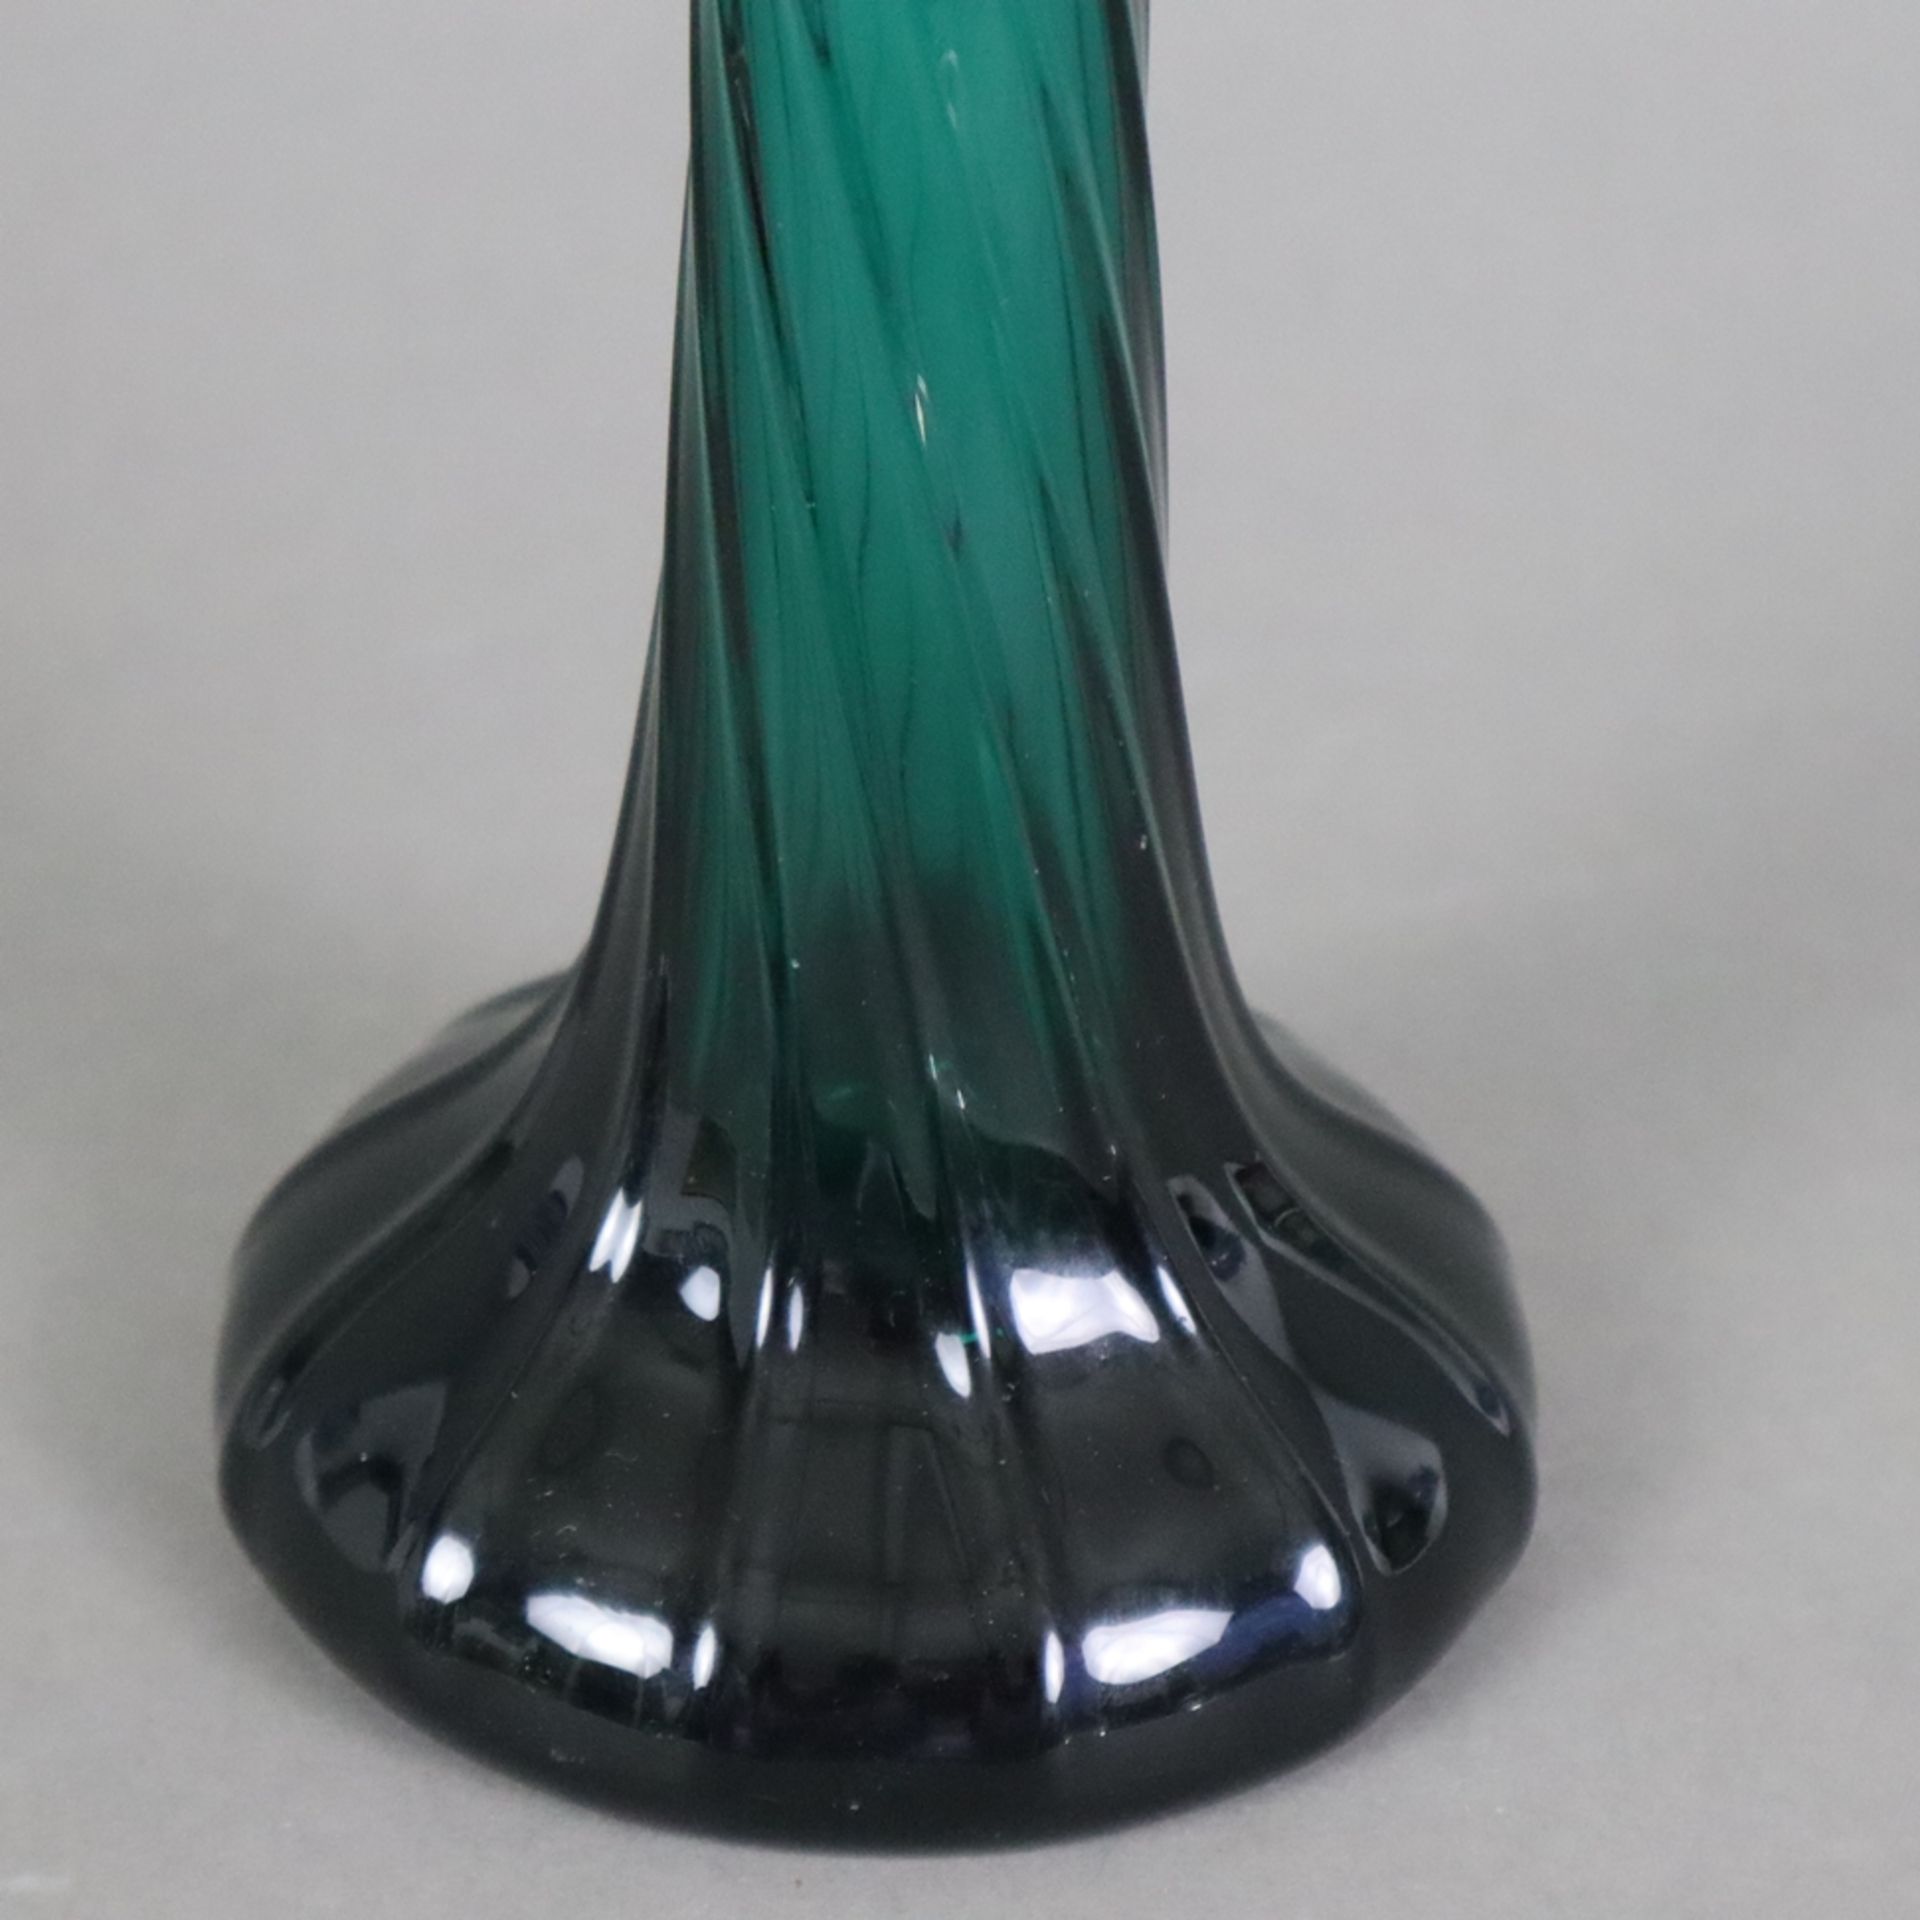 Enghalsvase - Murano, bläulich grünes Glas, über rundem Fuß konischer Korpus mit weit ausgestelltem - Bild 4 aus 6